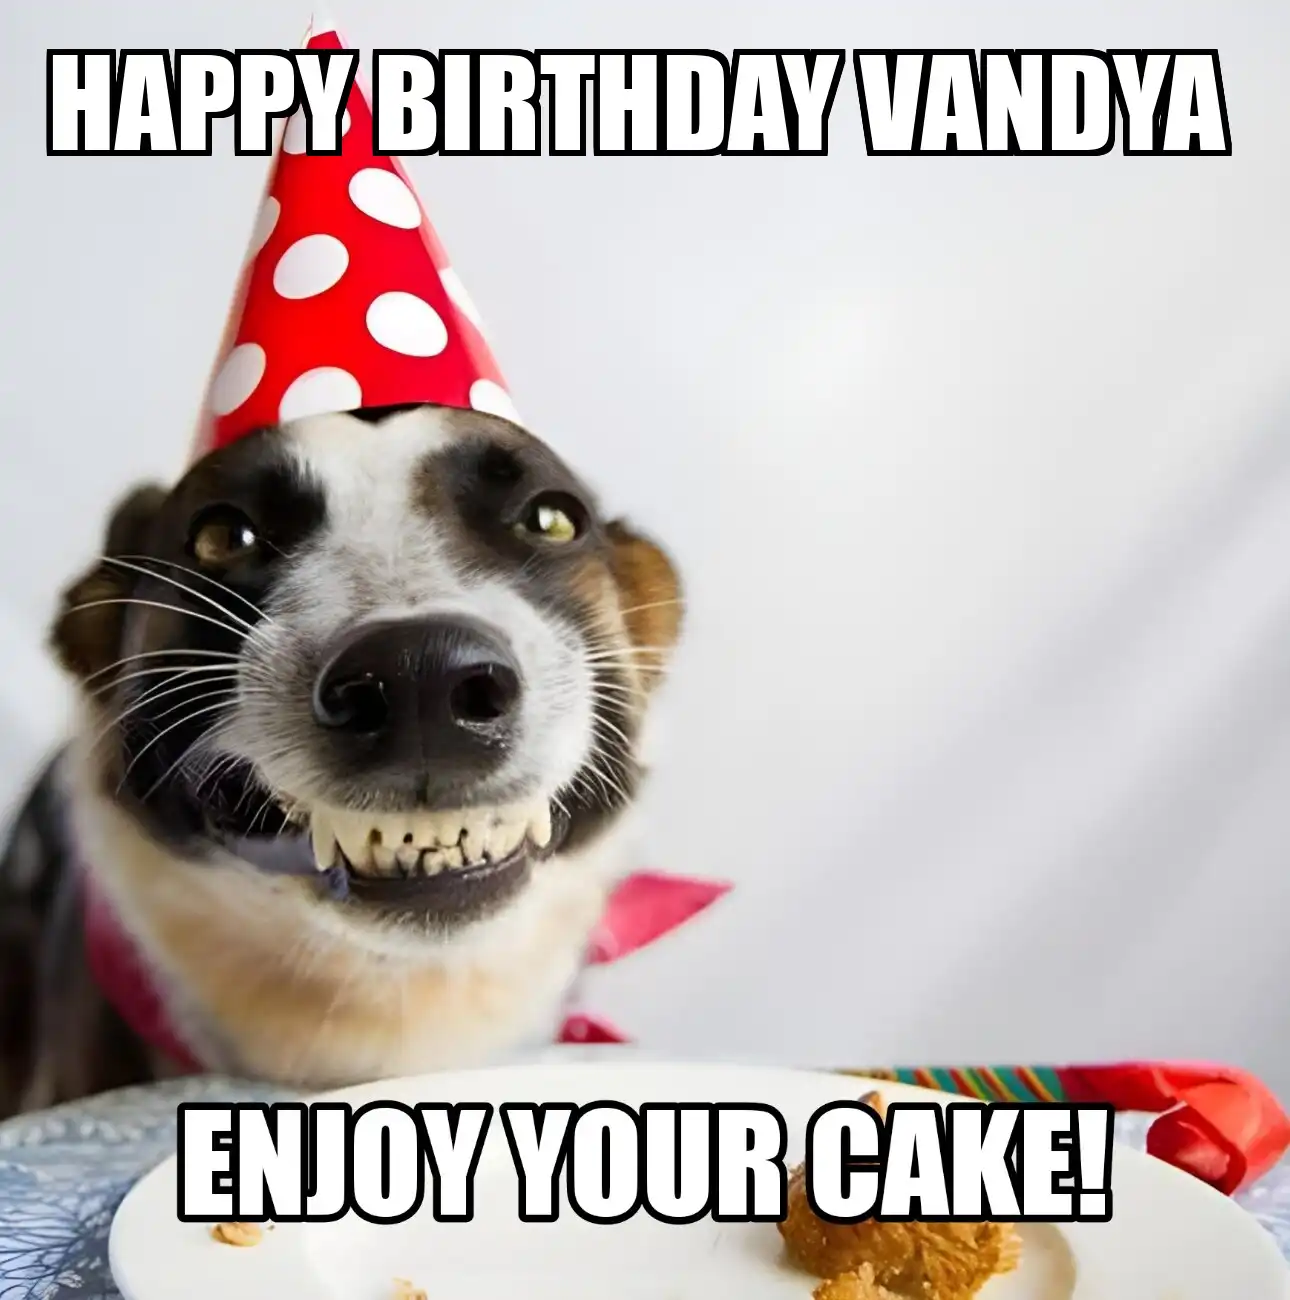 Happy Birthday Vandya Enjoy Your Cake Dog Meme